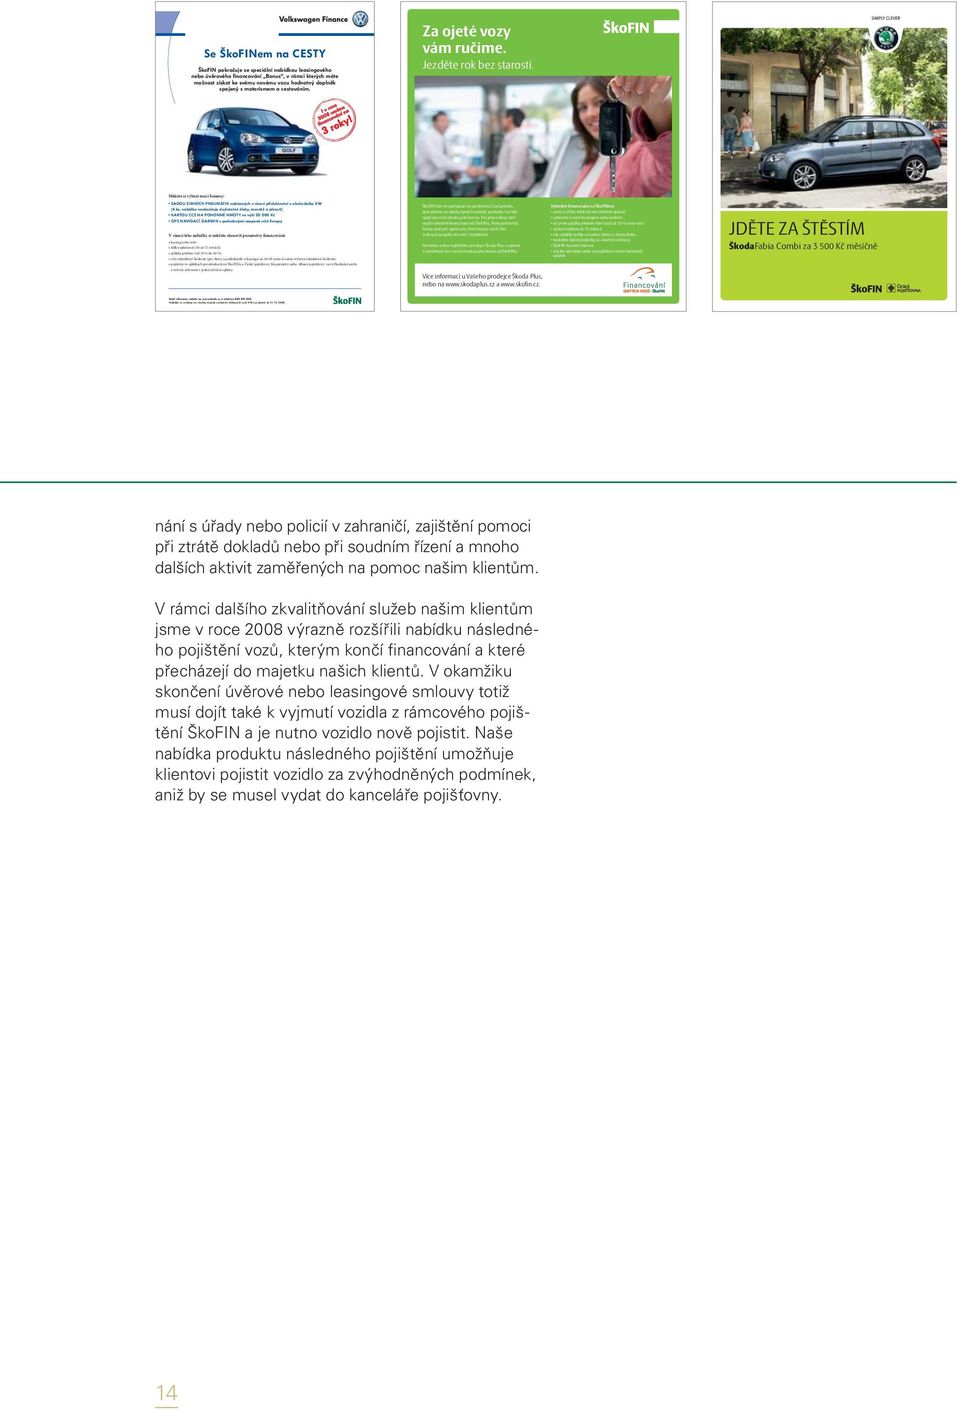 Profil společnosti. Mezi nejdůležitější atributy úspěšného působení  společnosti ŠkoFIN patří dobře připravené portfolio produktů: - PDF Stažení  zdarma